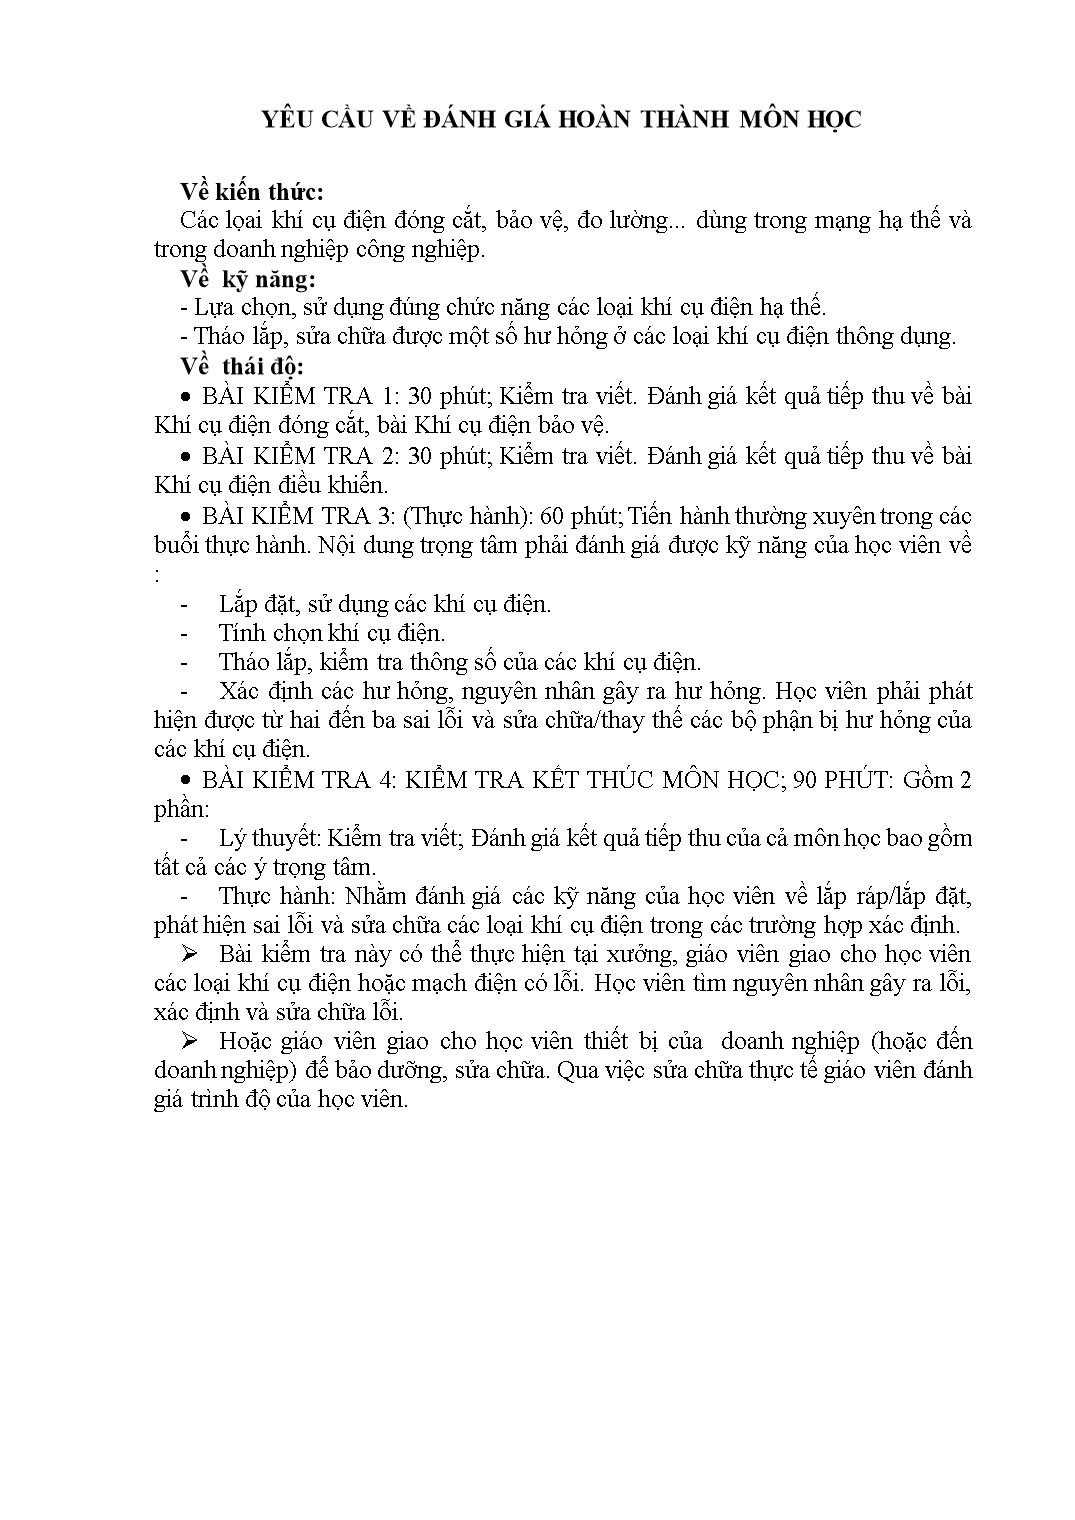 Giáo trình môn Khí cụ điện trang 4